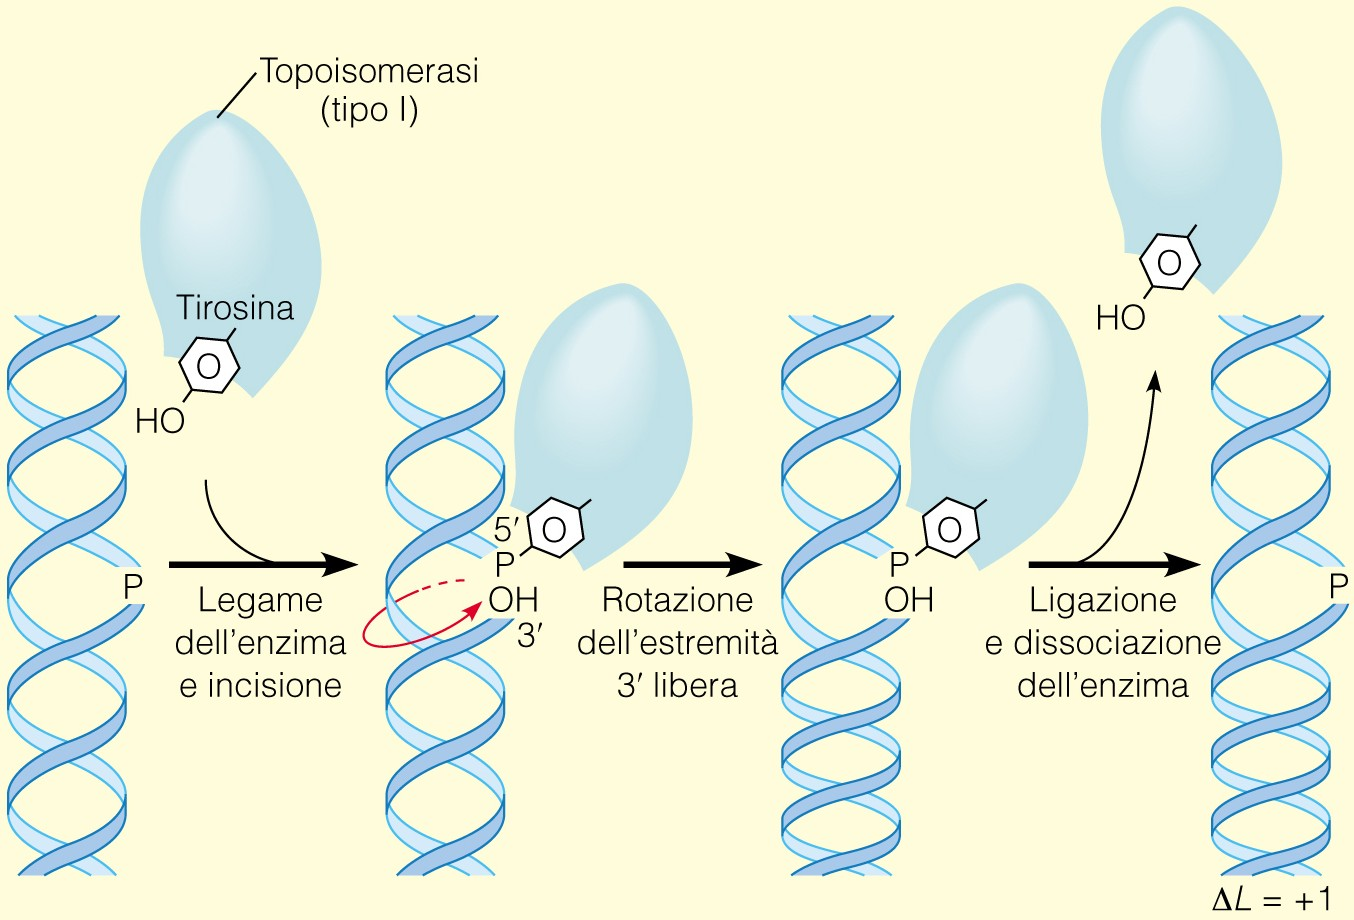 Attività enzimatica della topoisomerasi di tipo I (Legame